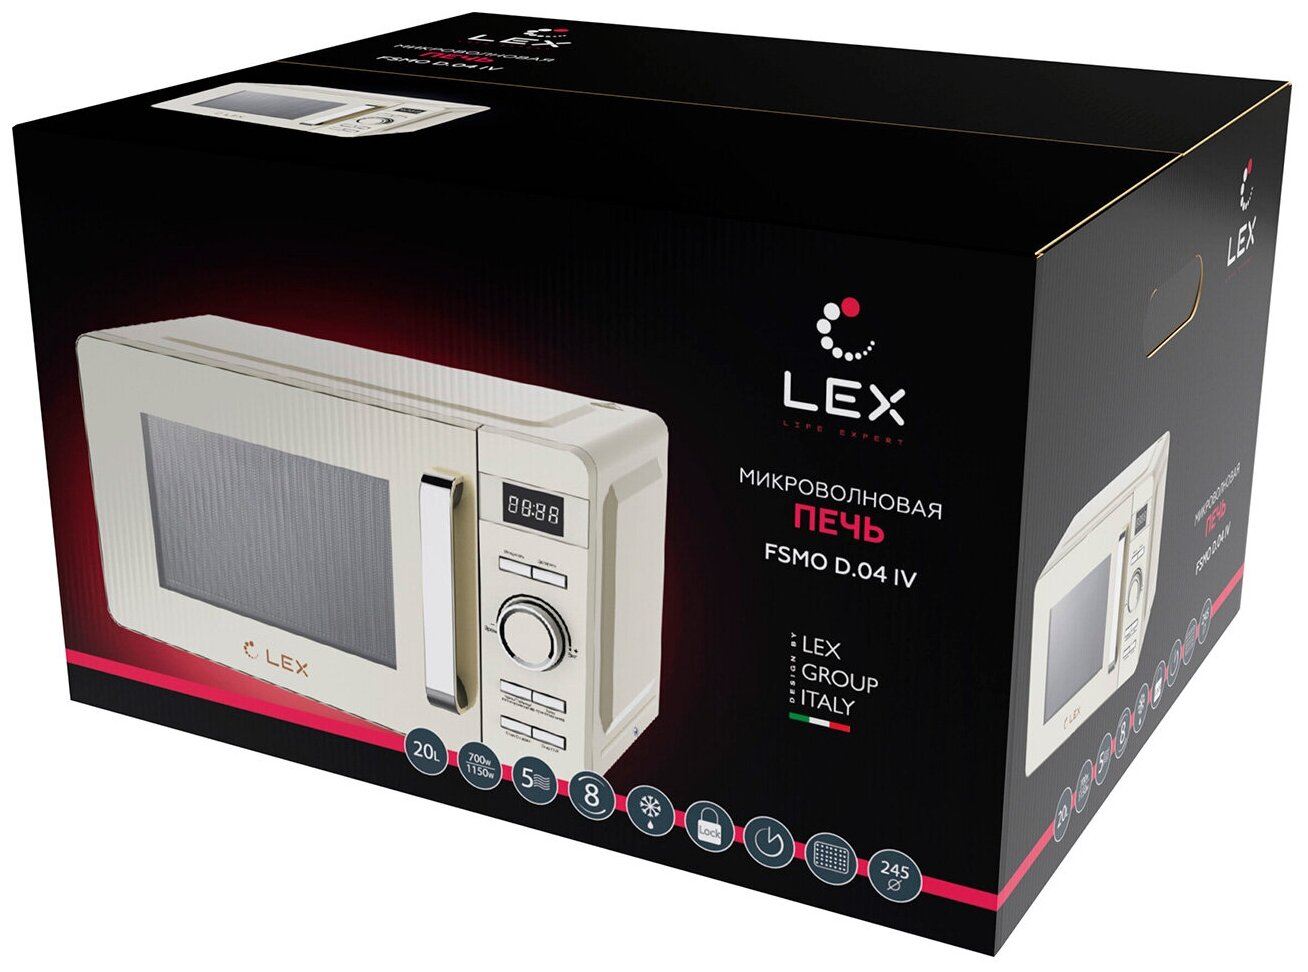 Микроволновая печь - СВЧ LEX FSMO D.04 IV, 20л бежевый